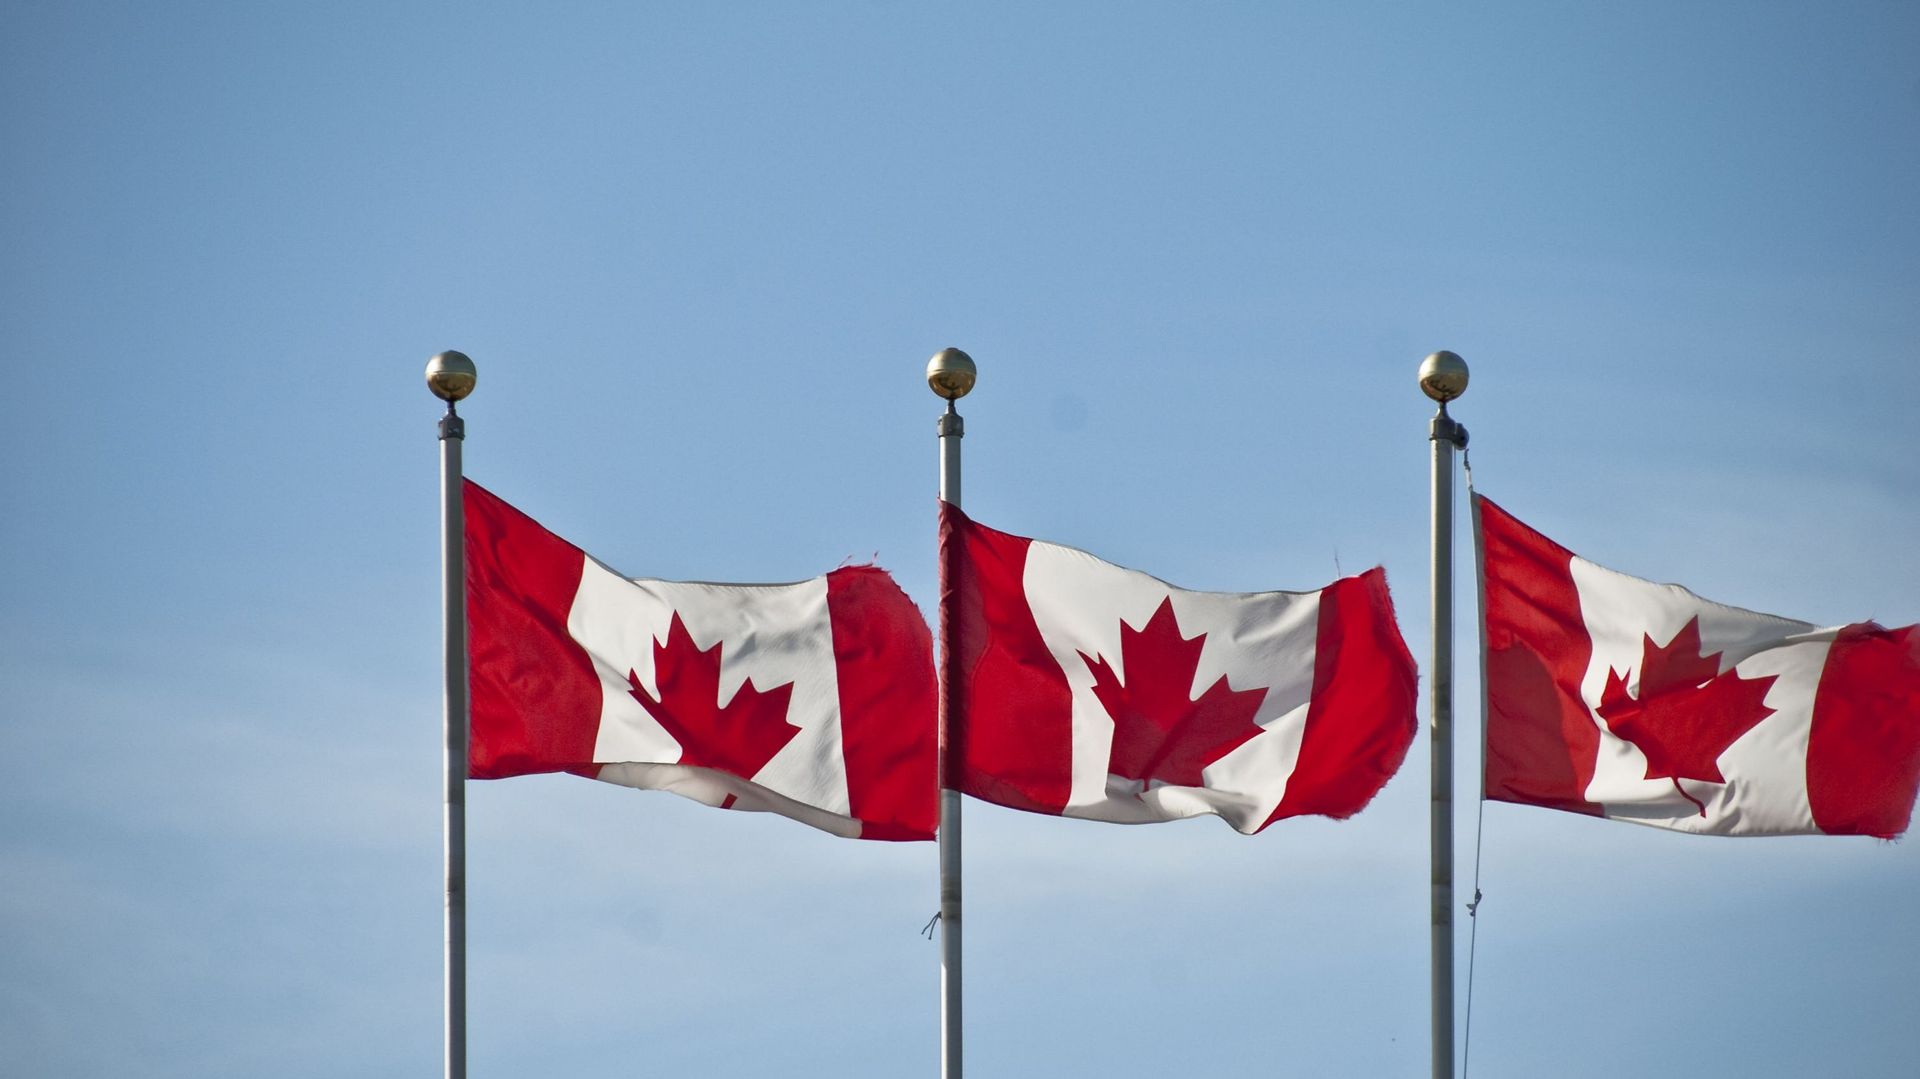 L'ambassadrice canadienne en France fustige un "Canada bashing" au Parlement français